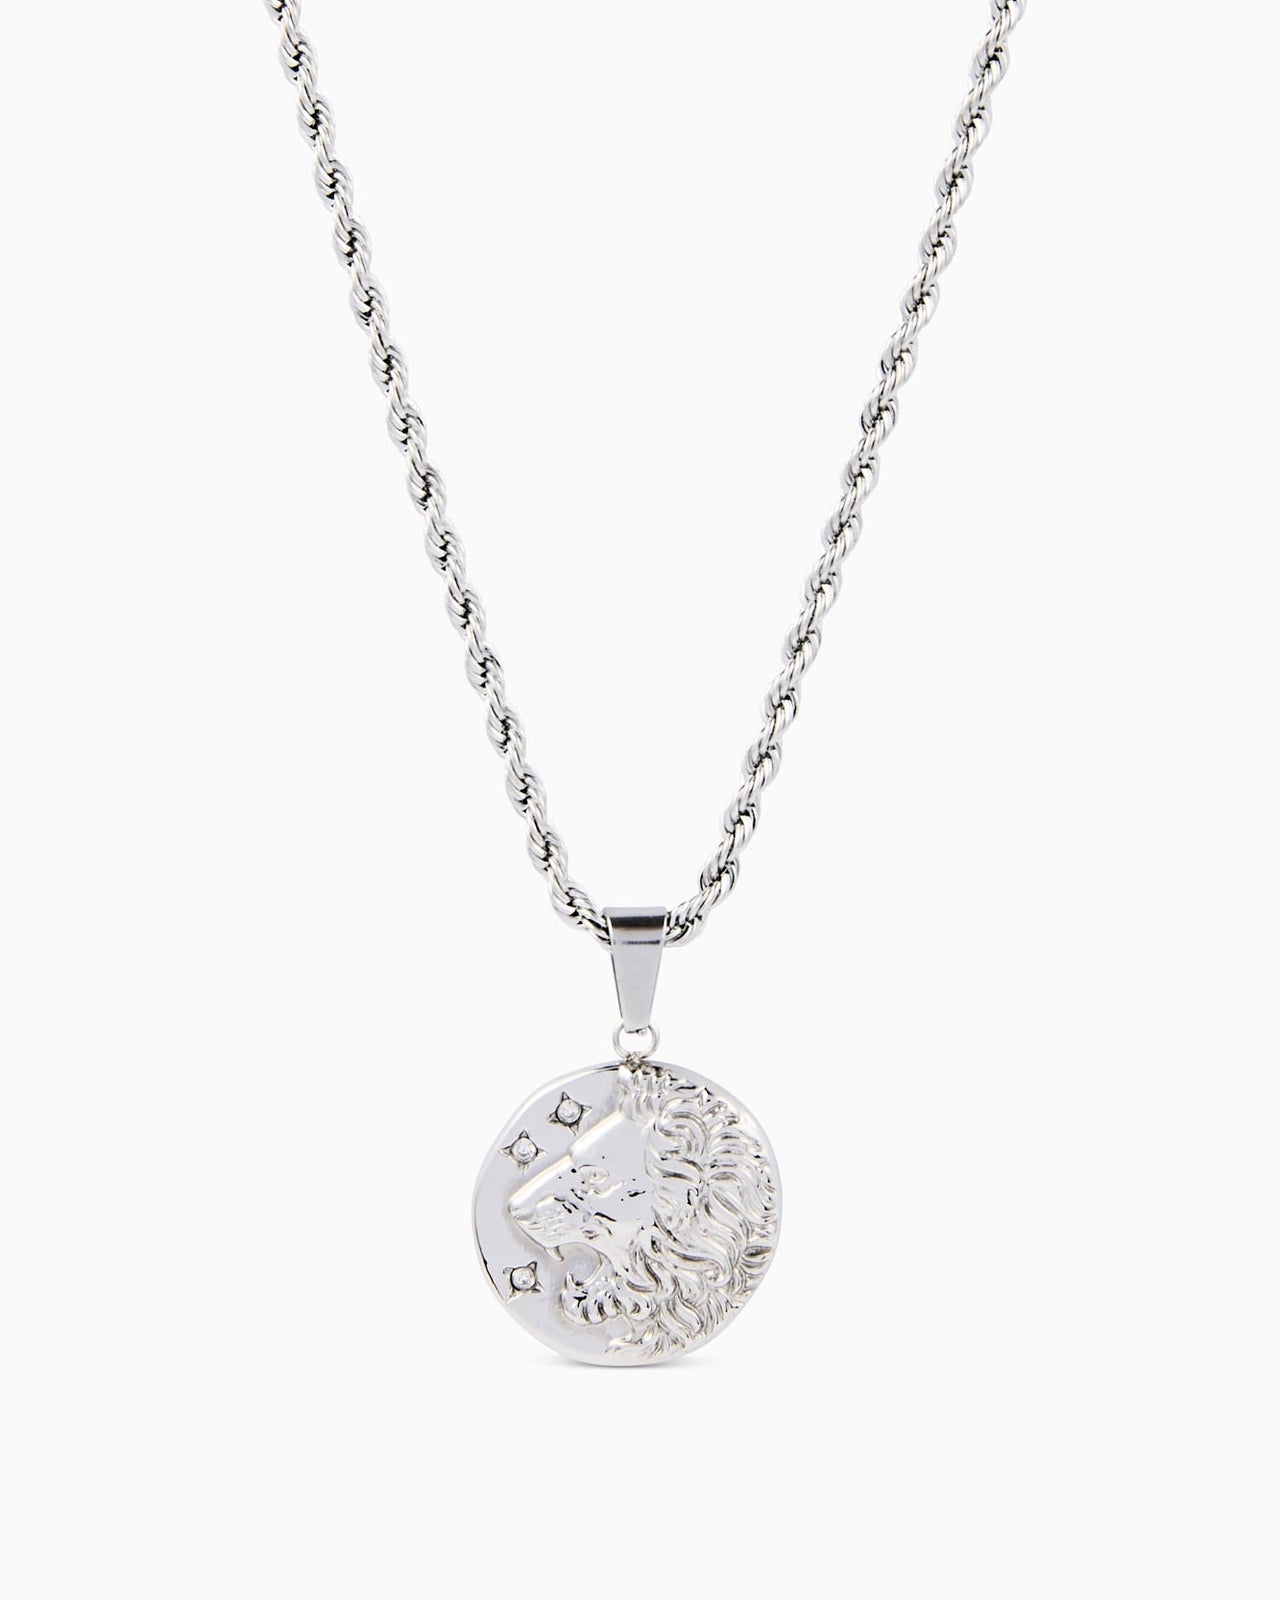 Lion Pendant & Chain (Silver)